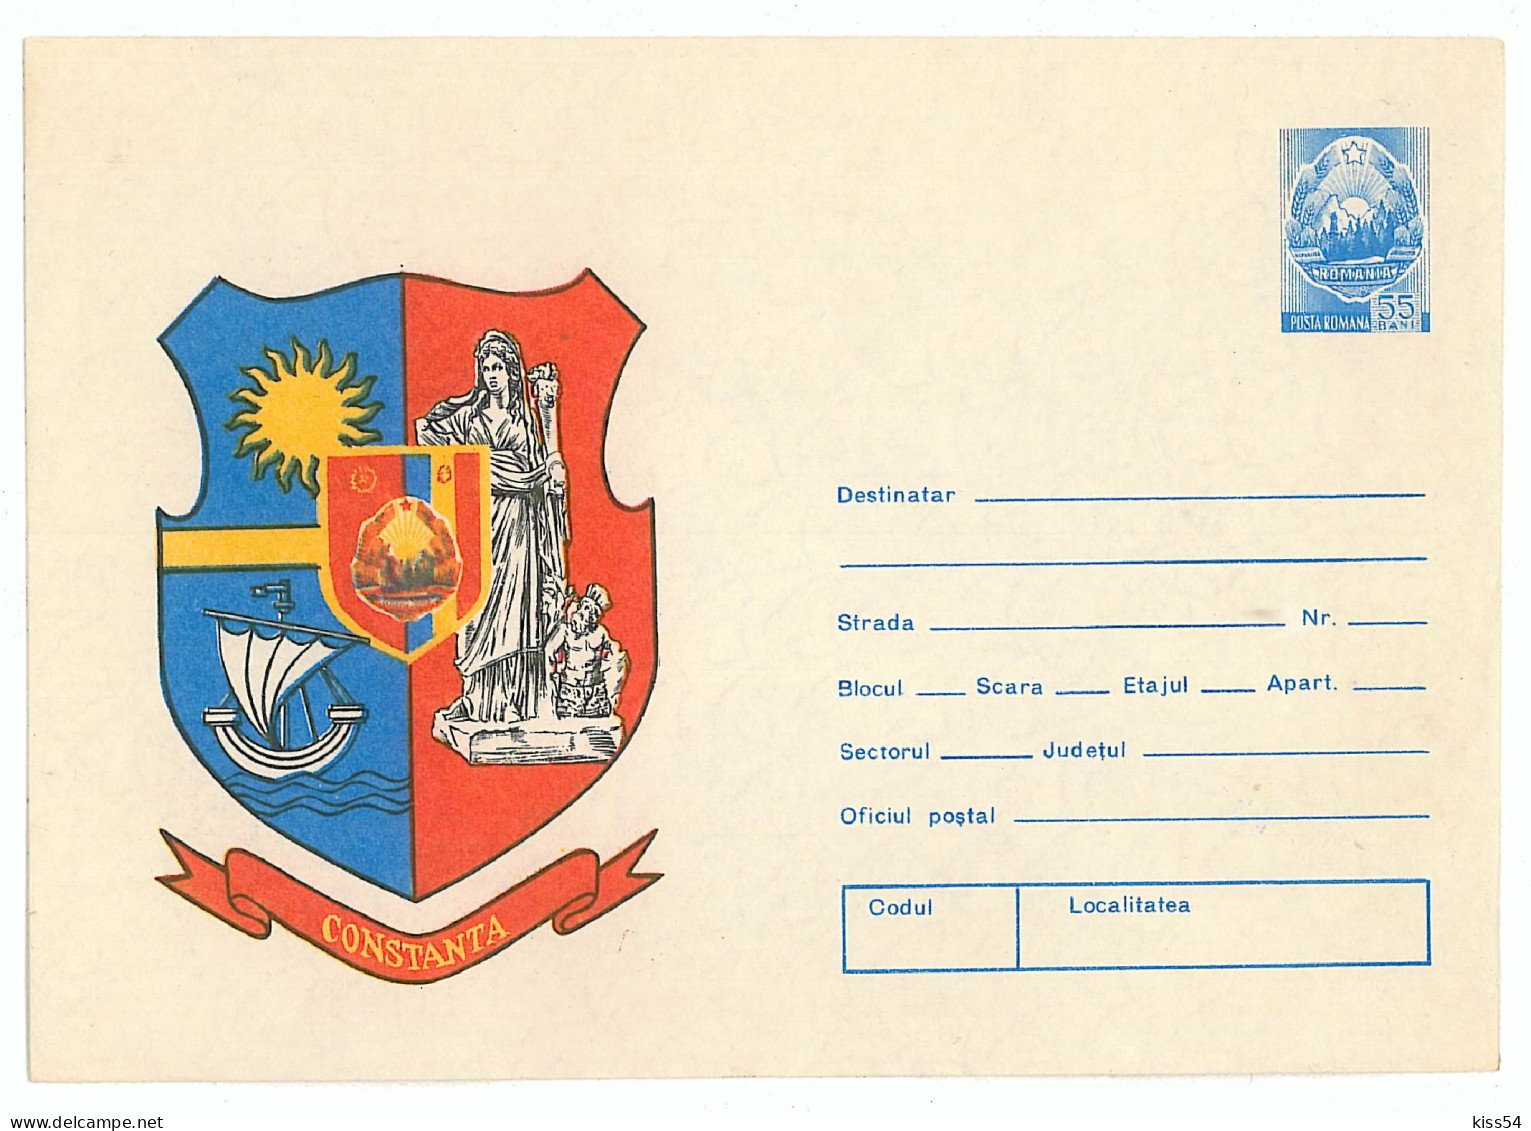 IP 76 - 154 BOAT, Heraldry CONSTANTA - Stationery - Unused - 1976 - Postal Stationery